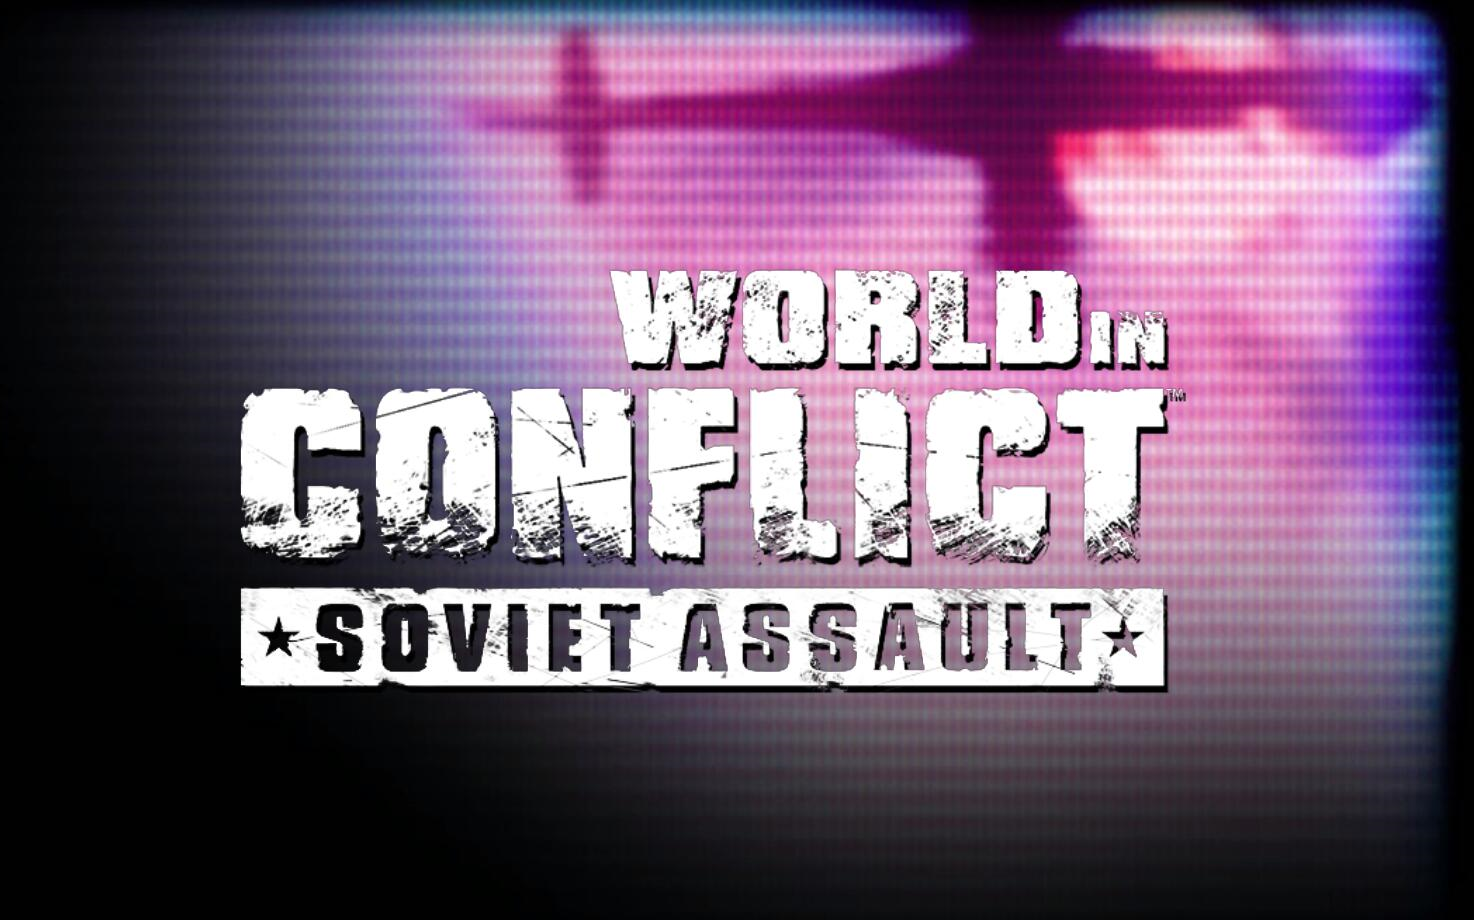 冲突世界苏联入侵壁纸图片